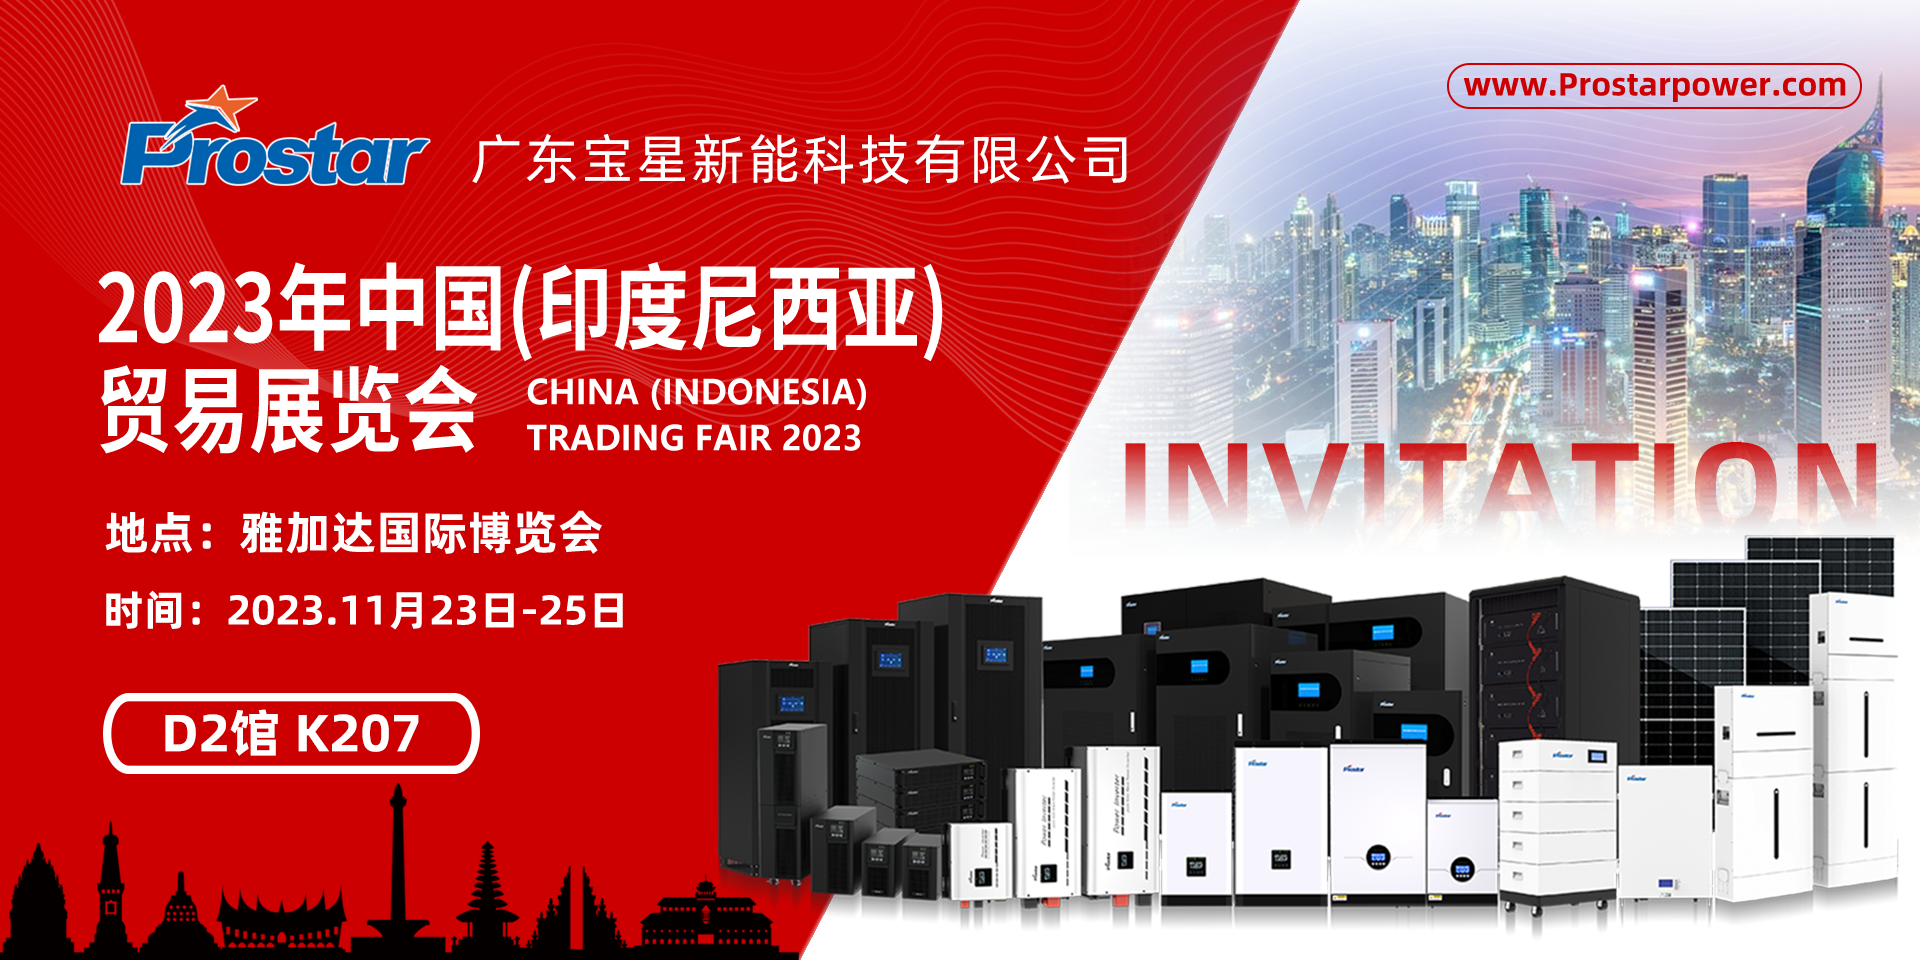 展会邀请函丨 mg官方在线电子游戏邀您相聚2023年中国 (印度尼西亚)贸易展览会